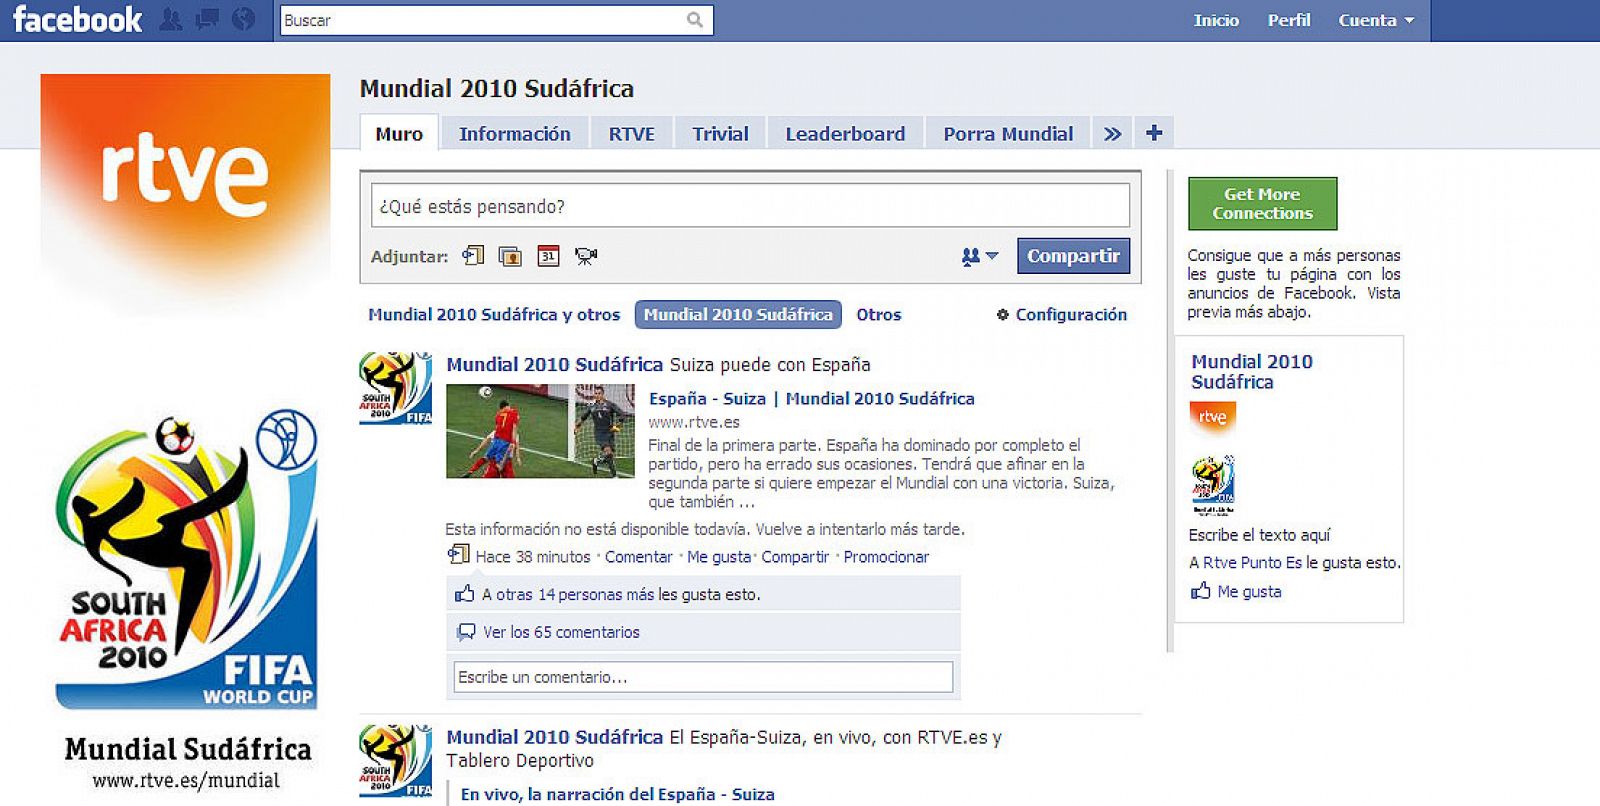 Una vista del sitio Facebook.com/mundial2010